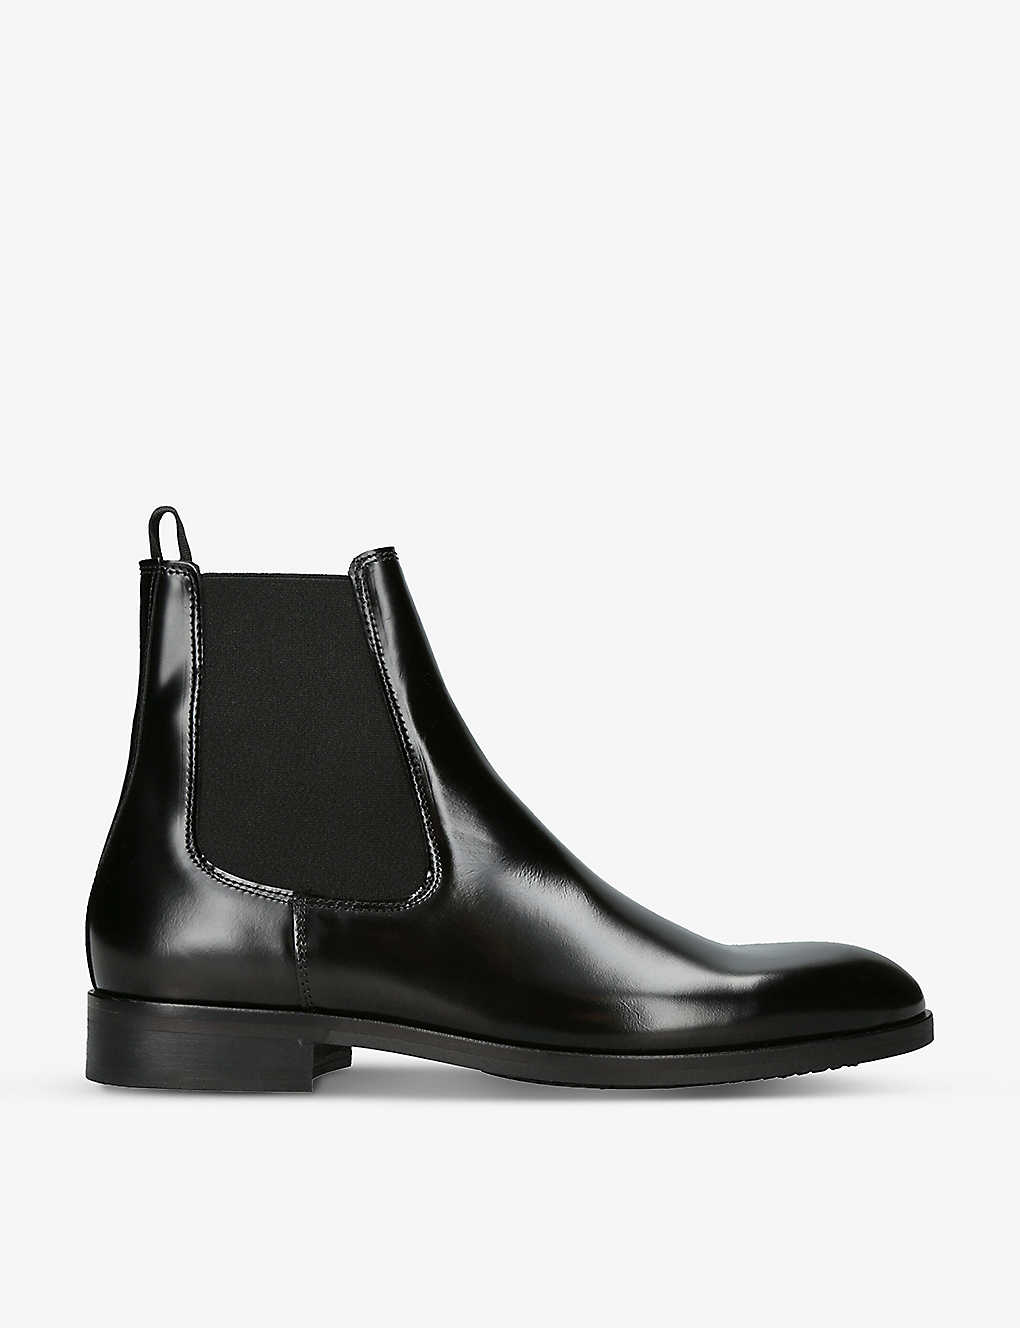 Shop Kurt Geiger London Men's Black Hunter Patent-leather Chelsea Boots